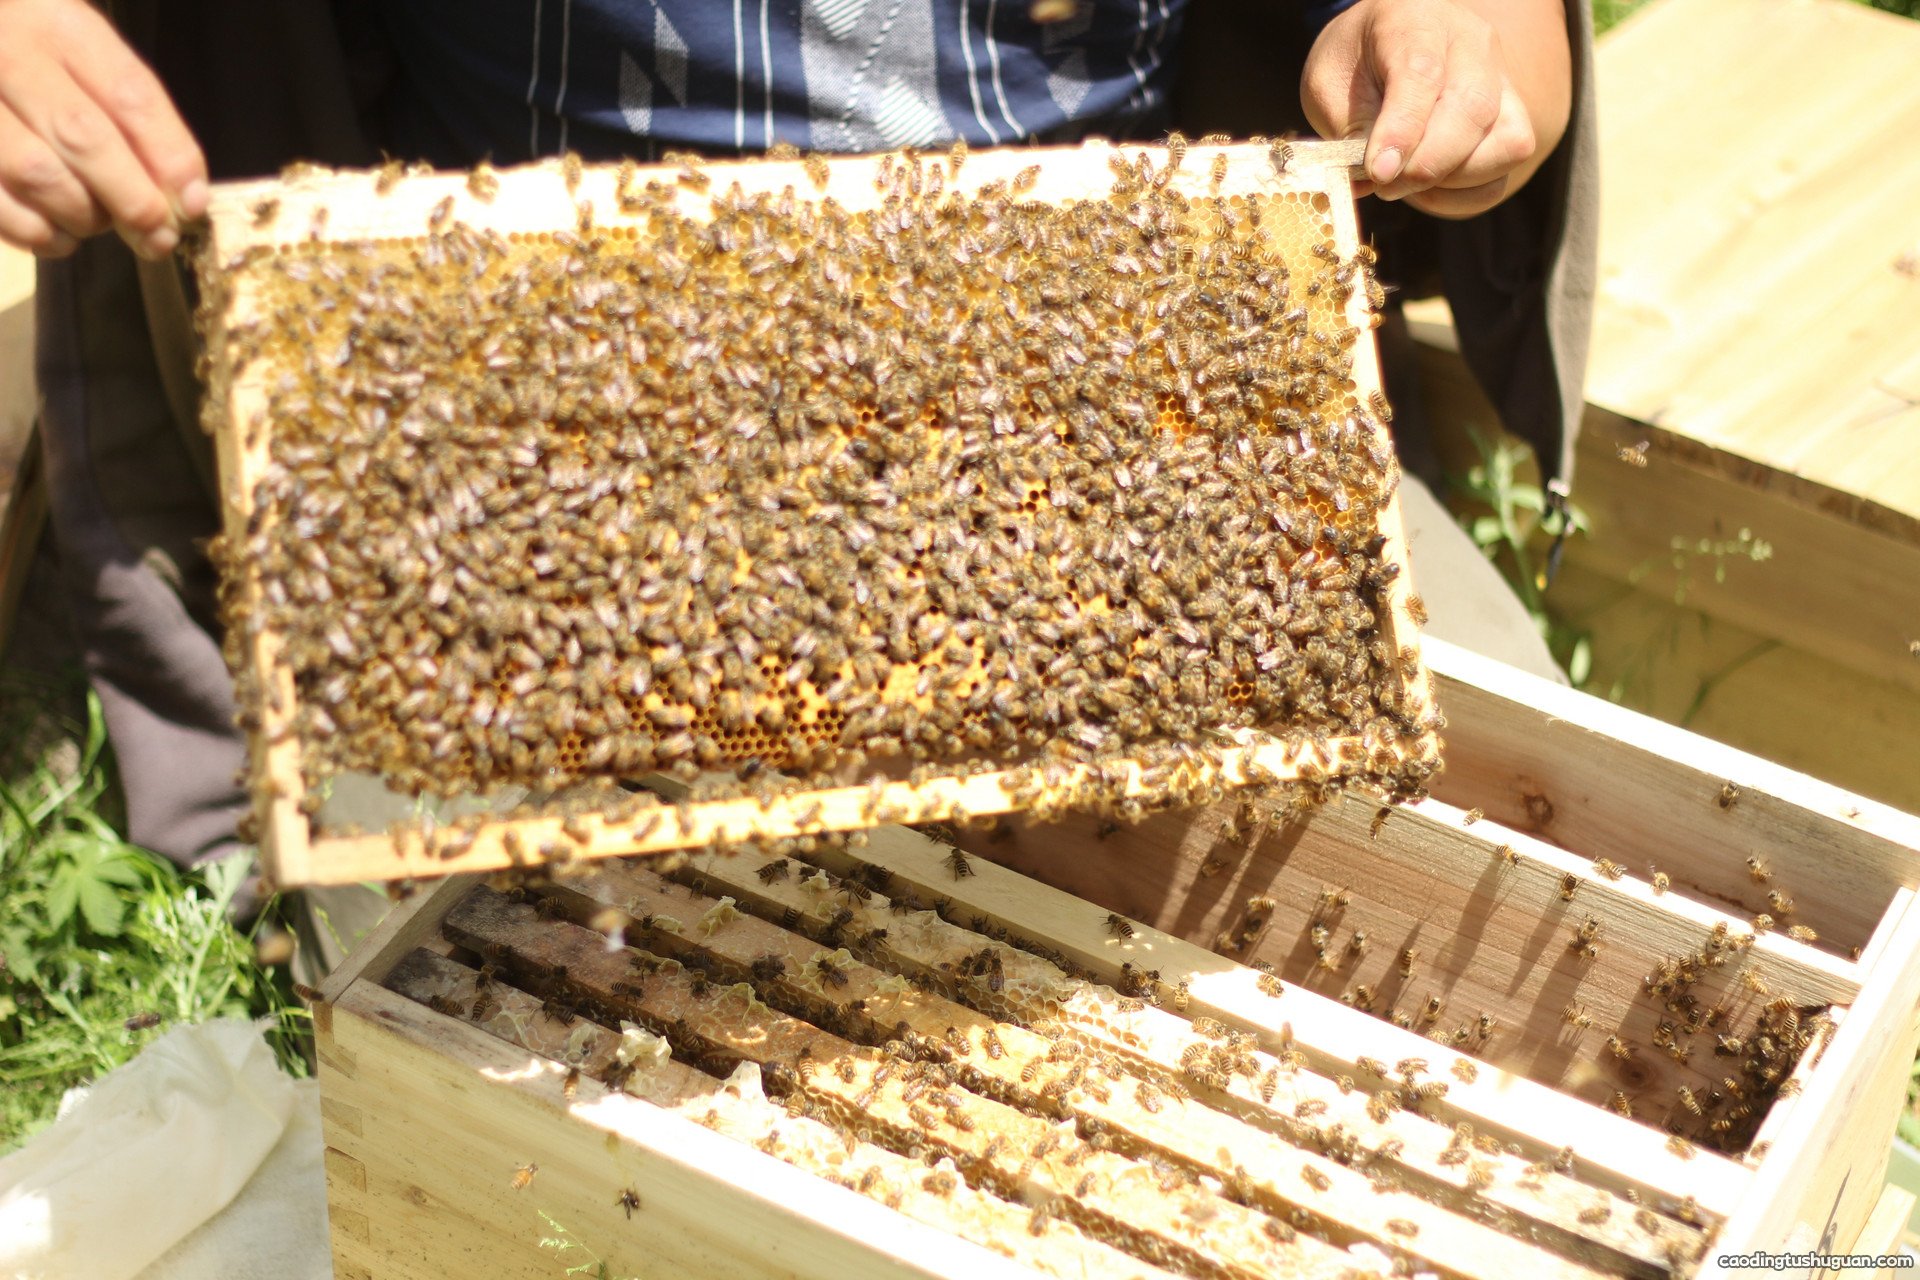 蜂胶怎么吃好 蜂胶的吃法与用量